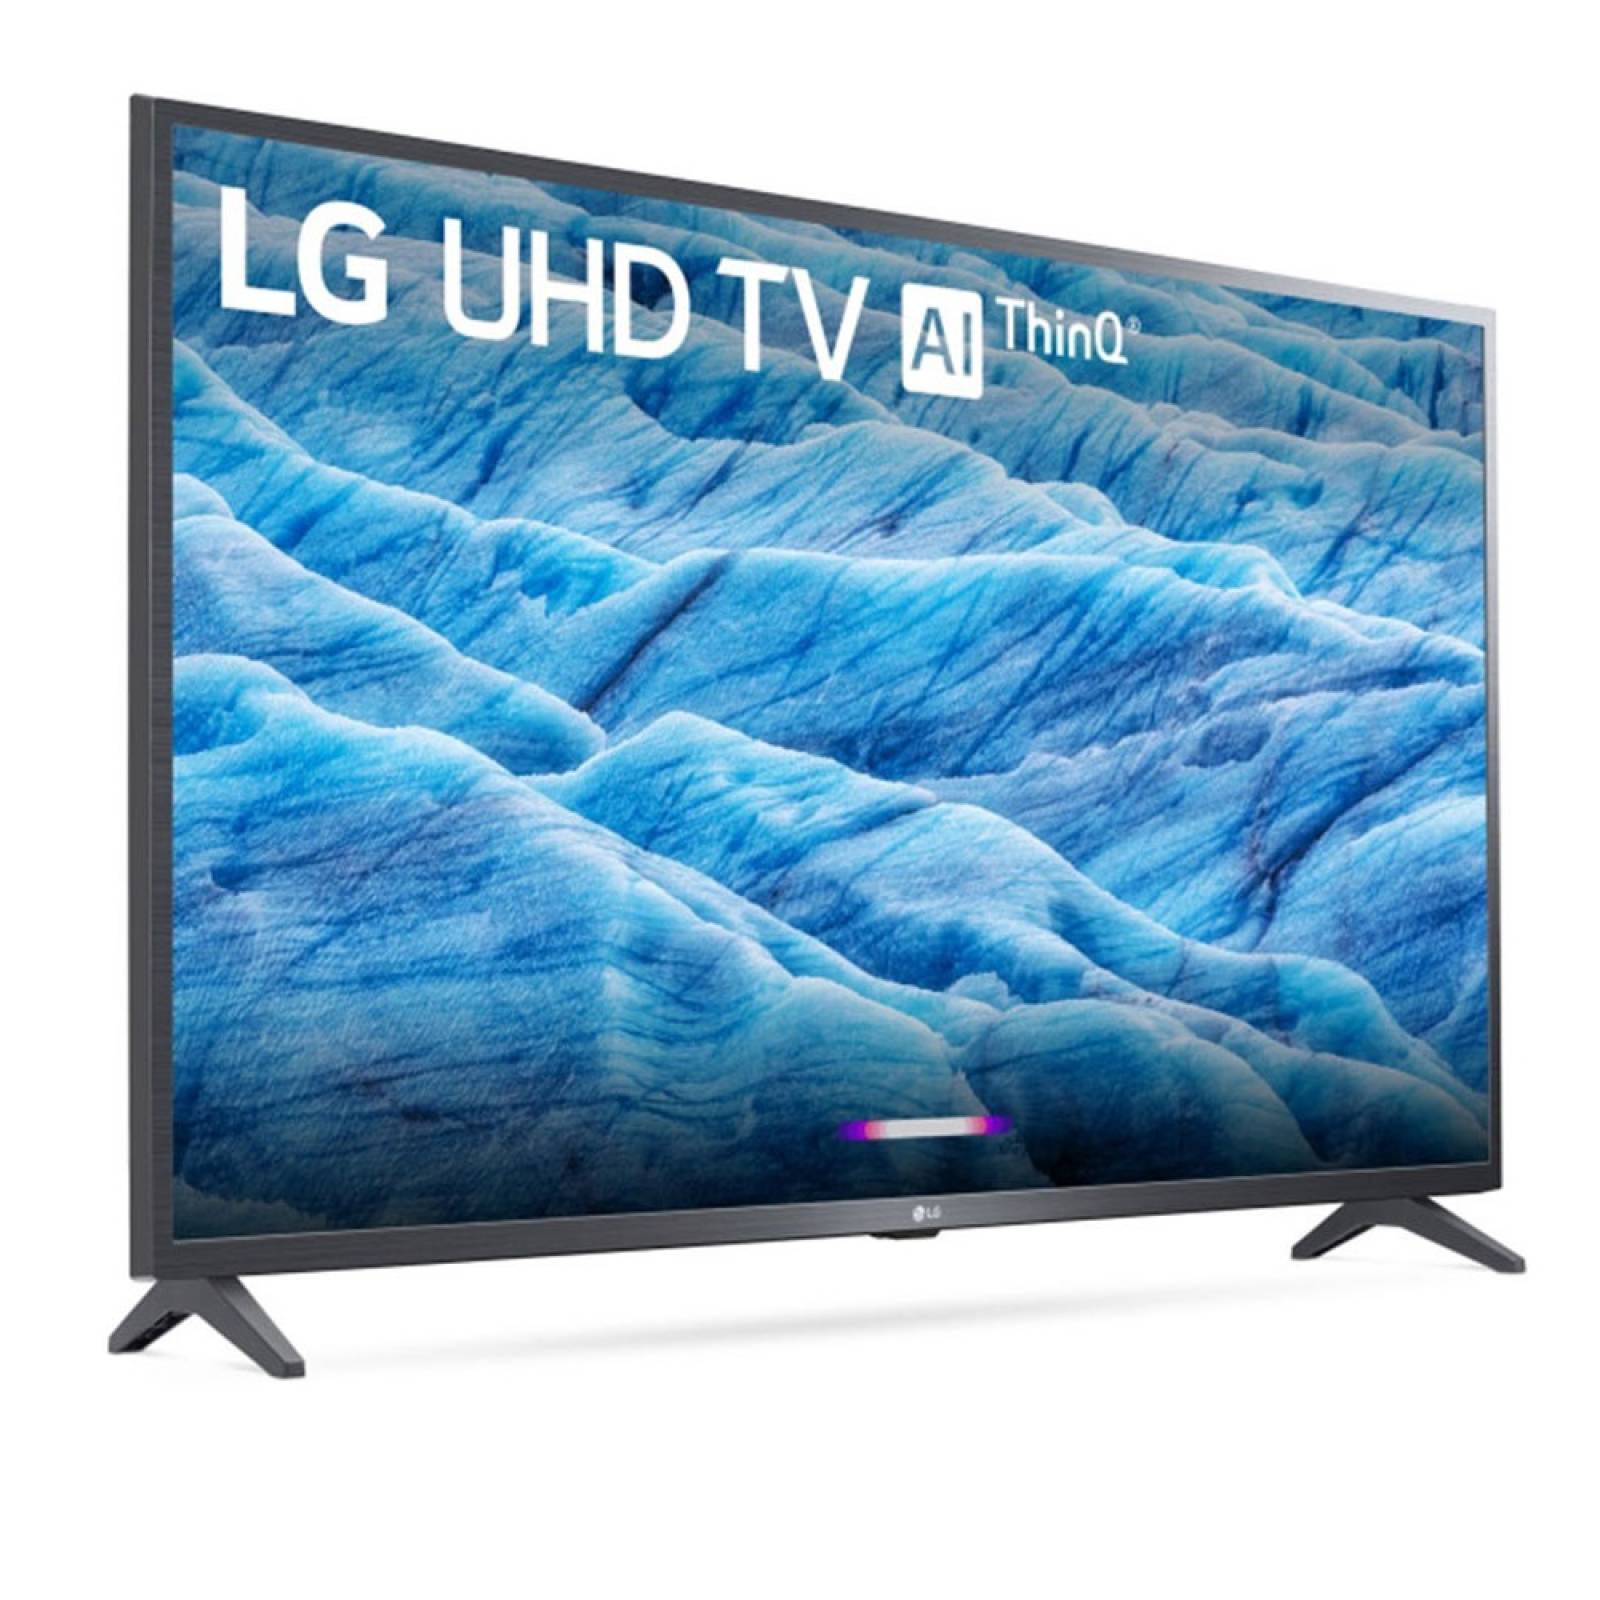 Smart TV 43 LG LED 4K UHD 60Hz webOS HDR 43UM7300AUE - Reacondicionado